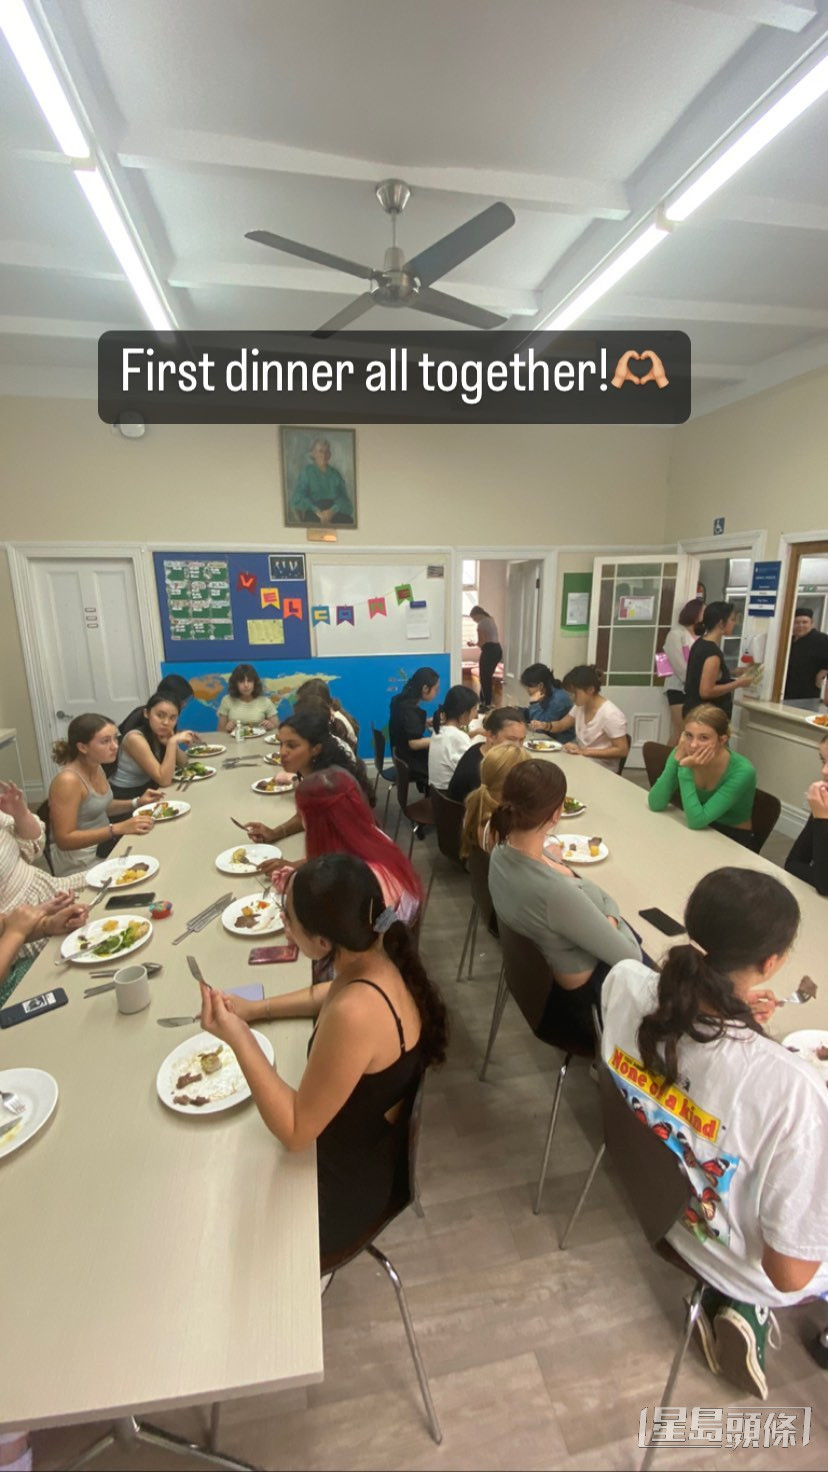 之前分享與同學首次一同享受晚餐。